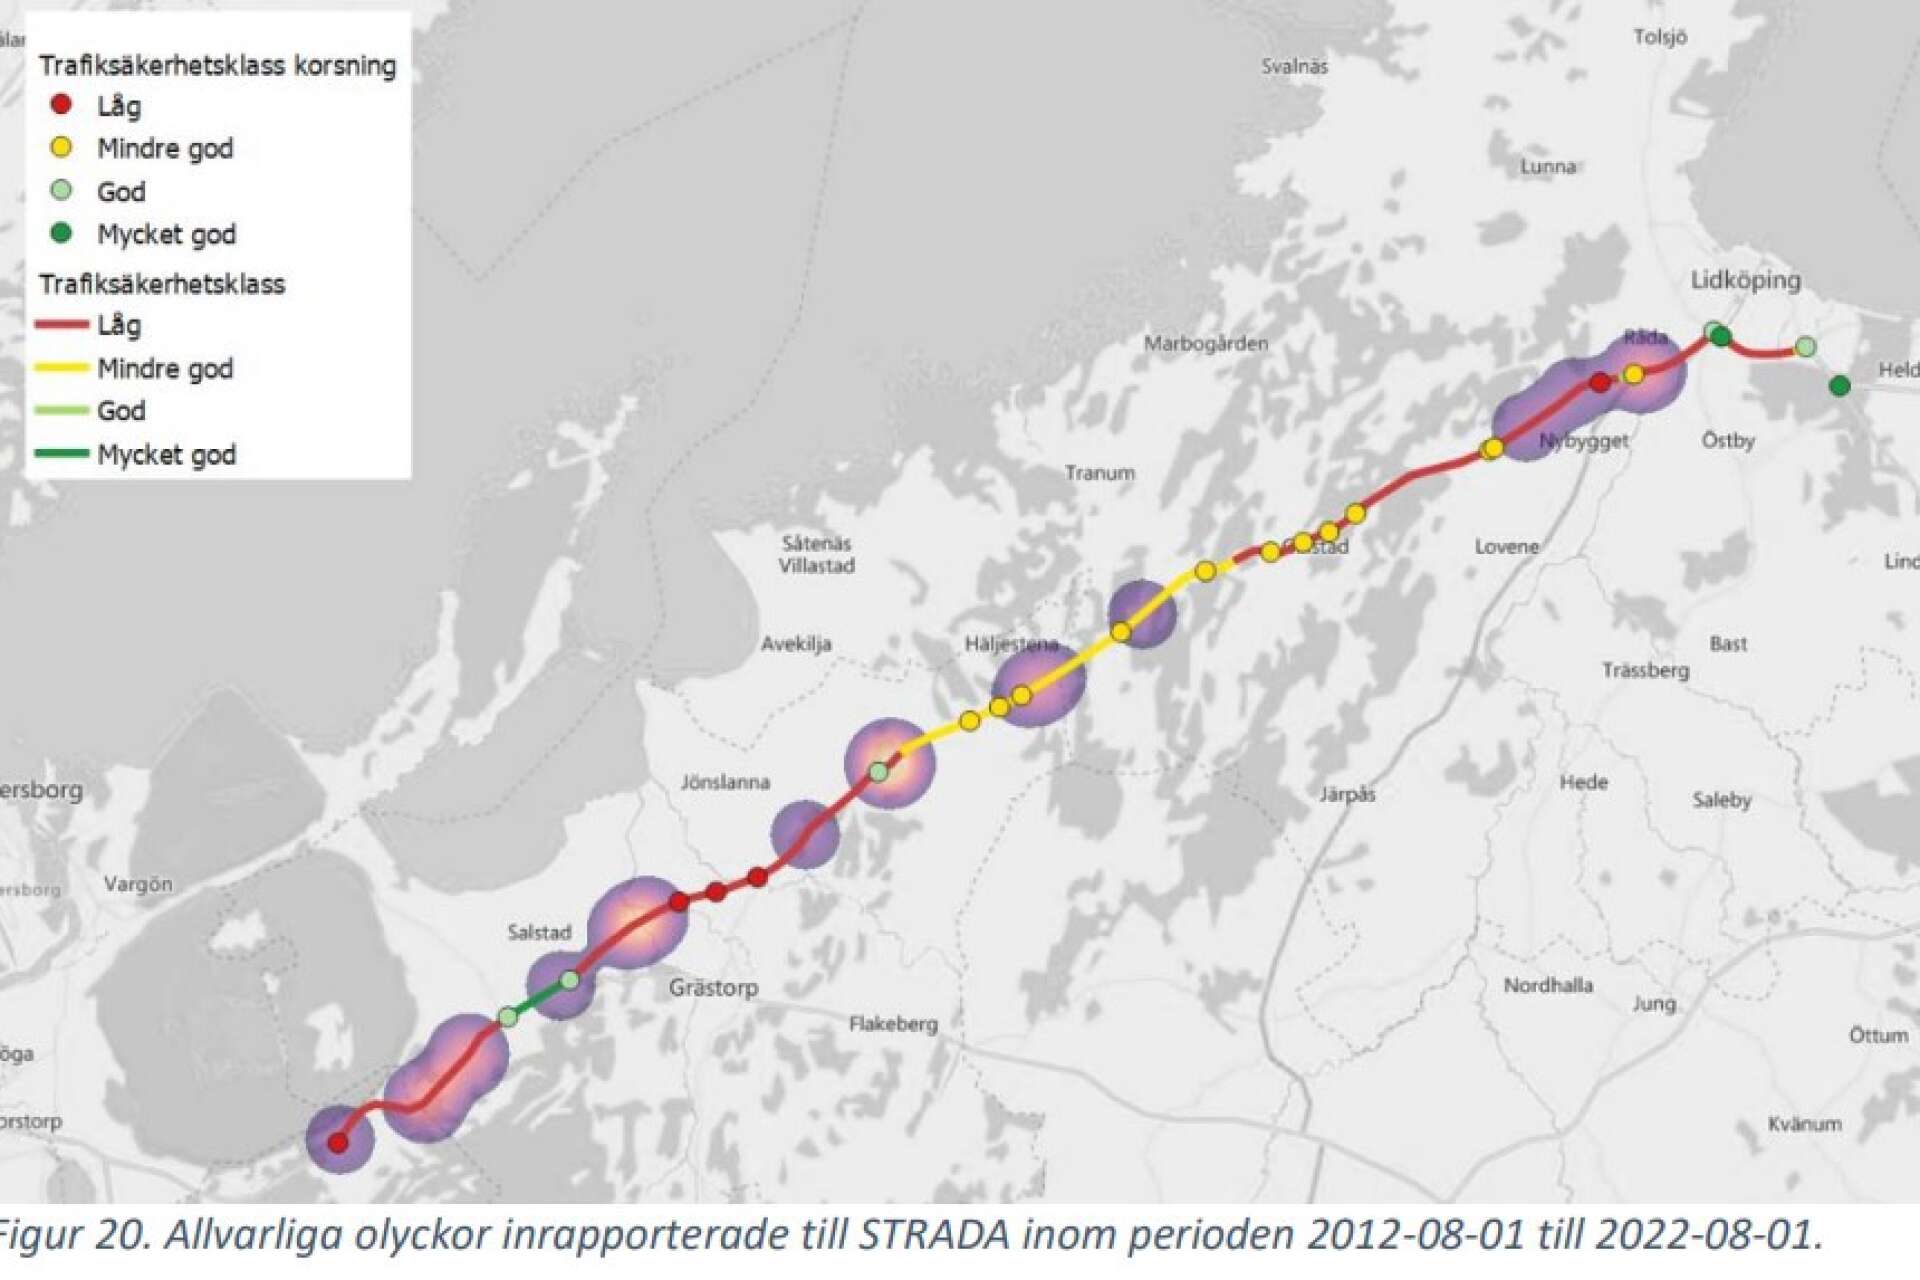 Allvarliga olyckor som är inrapporterade till Strada under perioden 2012-0801 till 2022-08-01. Få sträckor och korsningar har god trafiksäkerhet mellan Trollhättan och LIdköping, enligt illustrationen.